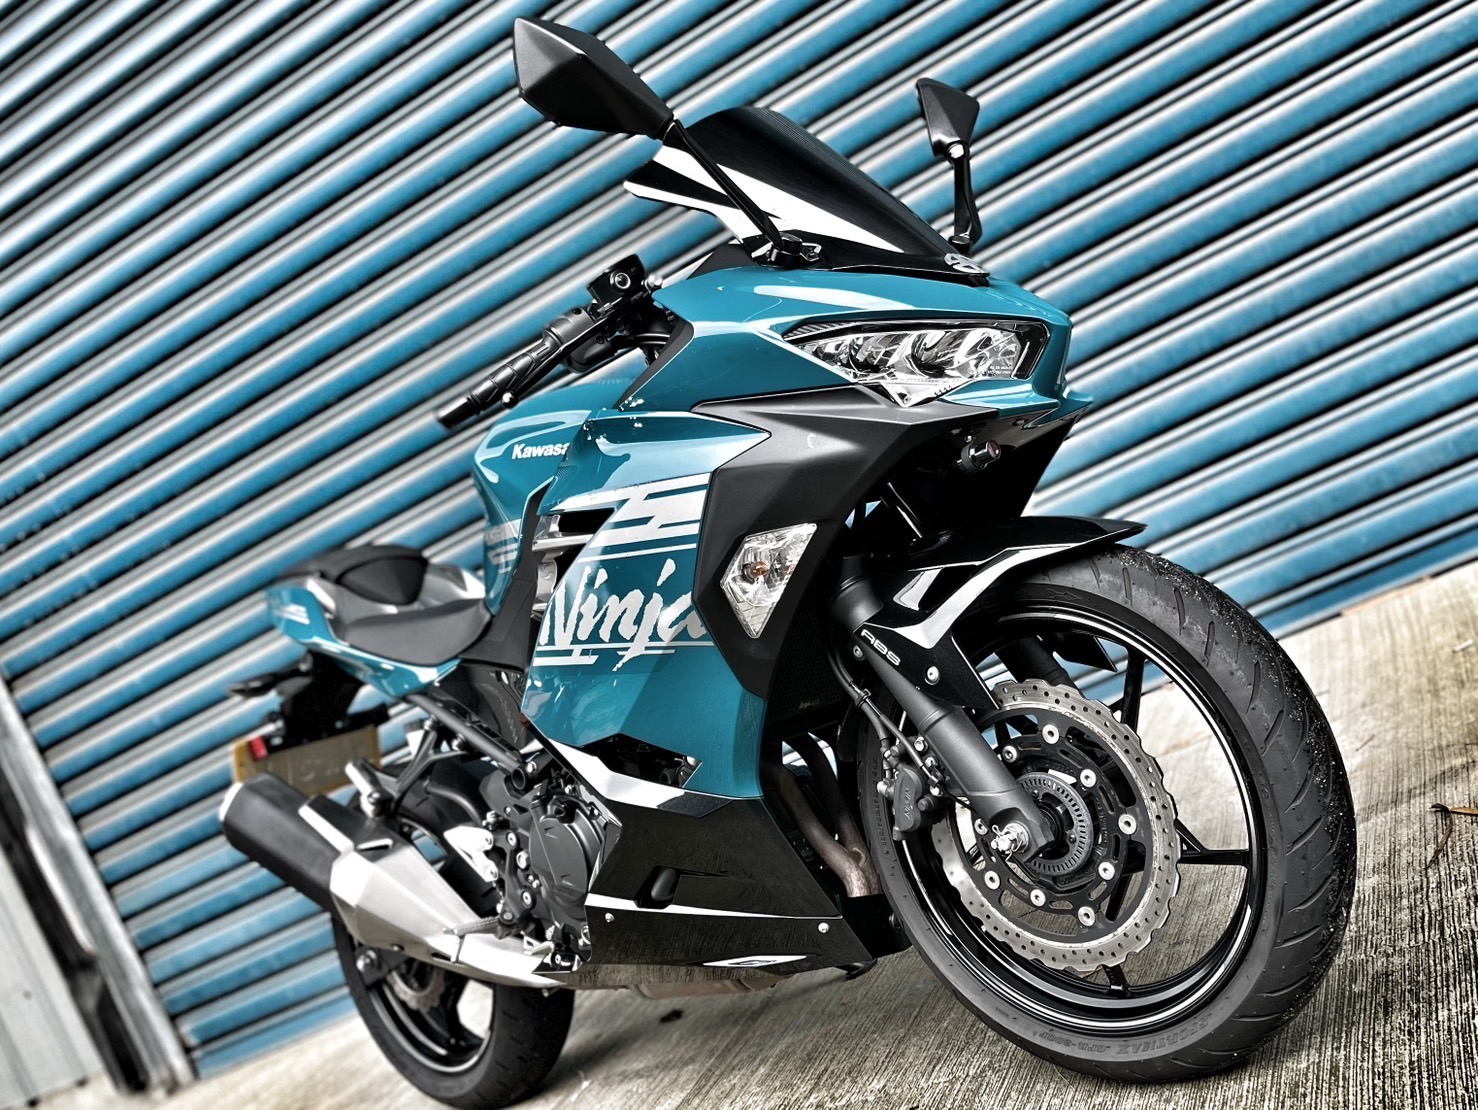 【小資族二手重機買賣】KAWASAKI NINJA400 - 「Webike-摩托車市」 原廠保固 里程保證 無摔無事故 小資族二手重機買賣